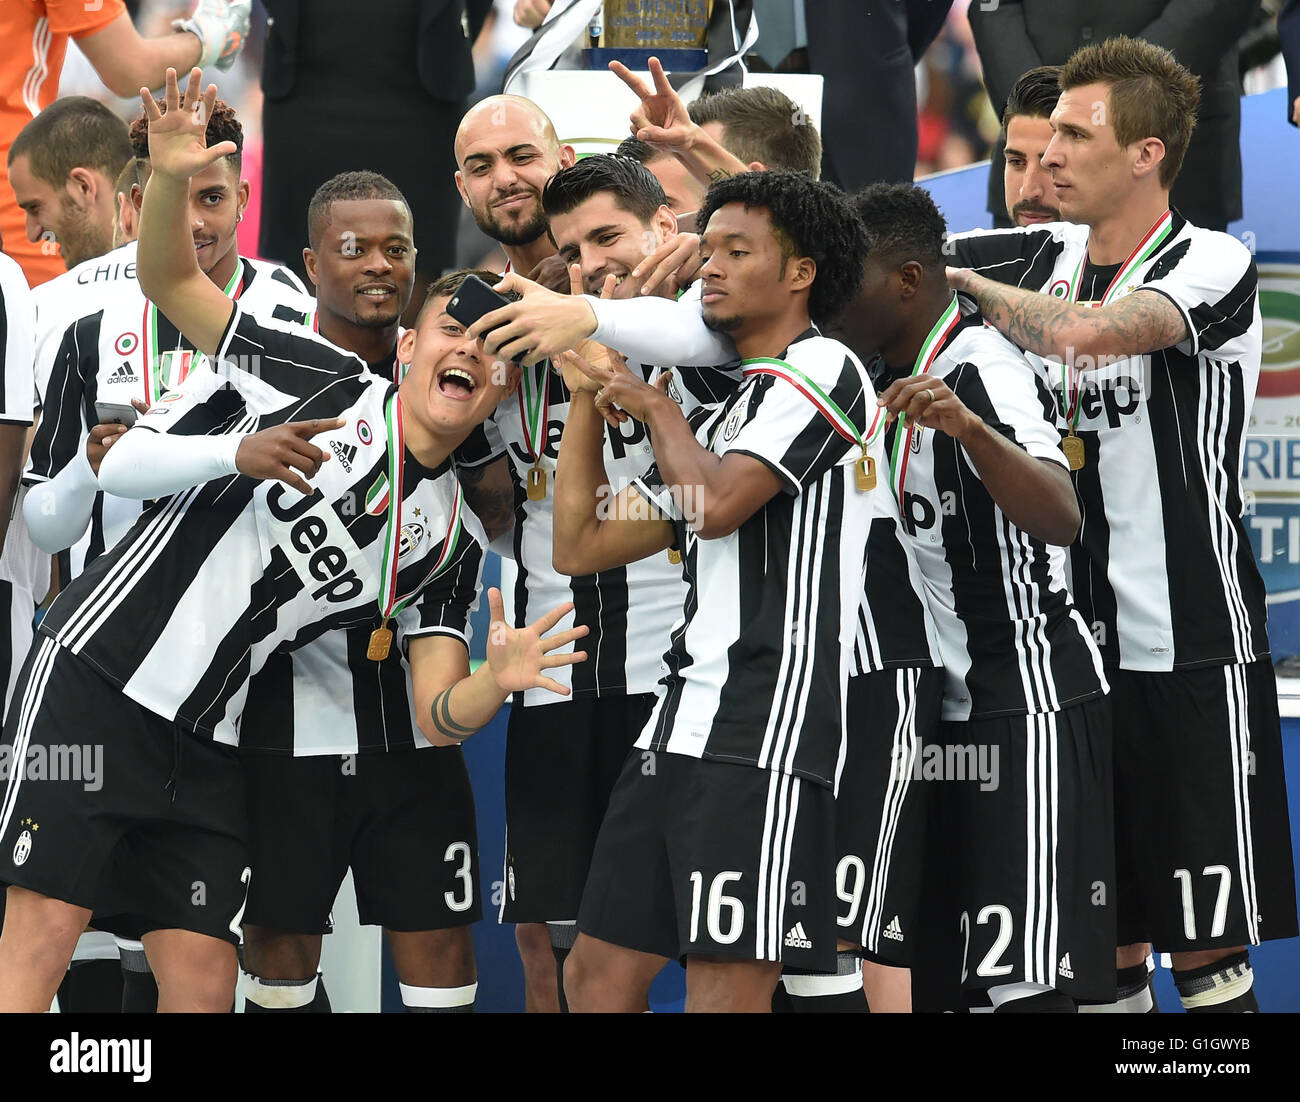 (160515) -- TURIN, 15 mai 2016 (Xinhua) -- la Juventus de joueurs prennent vos autoportraits comme ils célèbrent leur série un titre après un match contre la Sampdoria à Turin, Italie, le 14 mai 2016. (Xinhua/Alberto Lingria) Banque D'Images